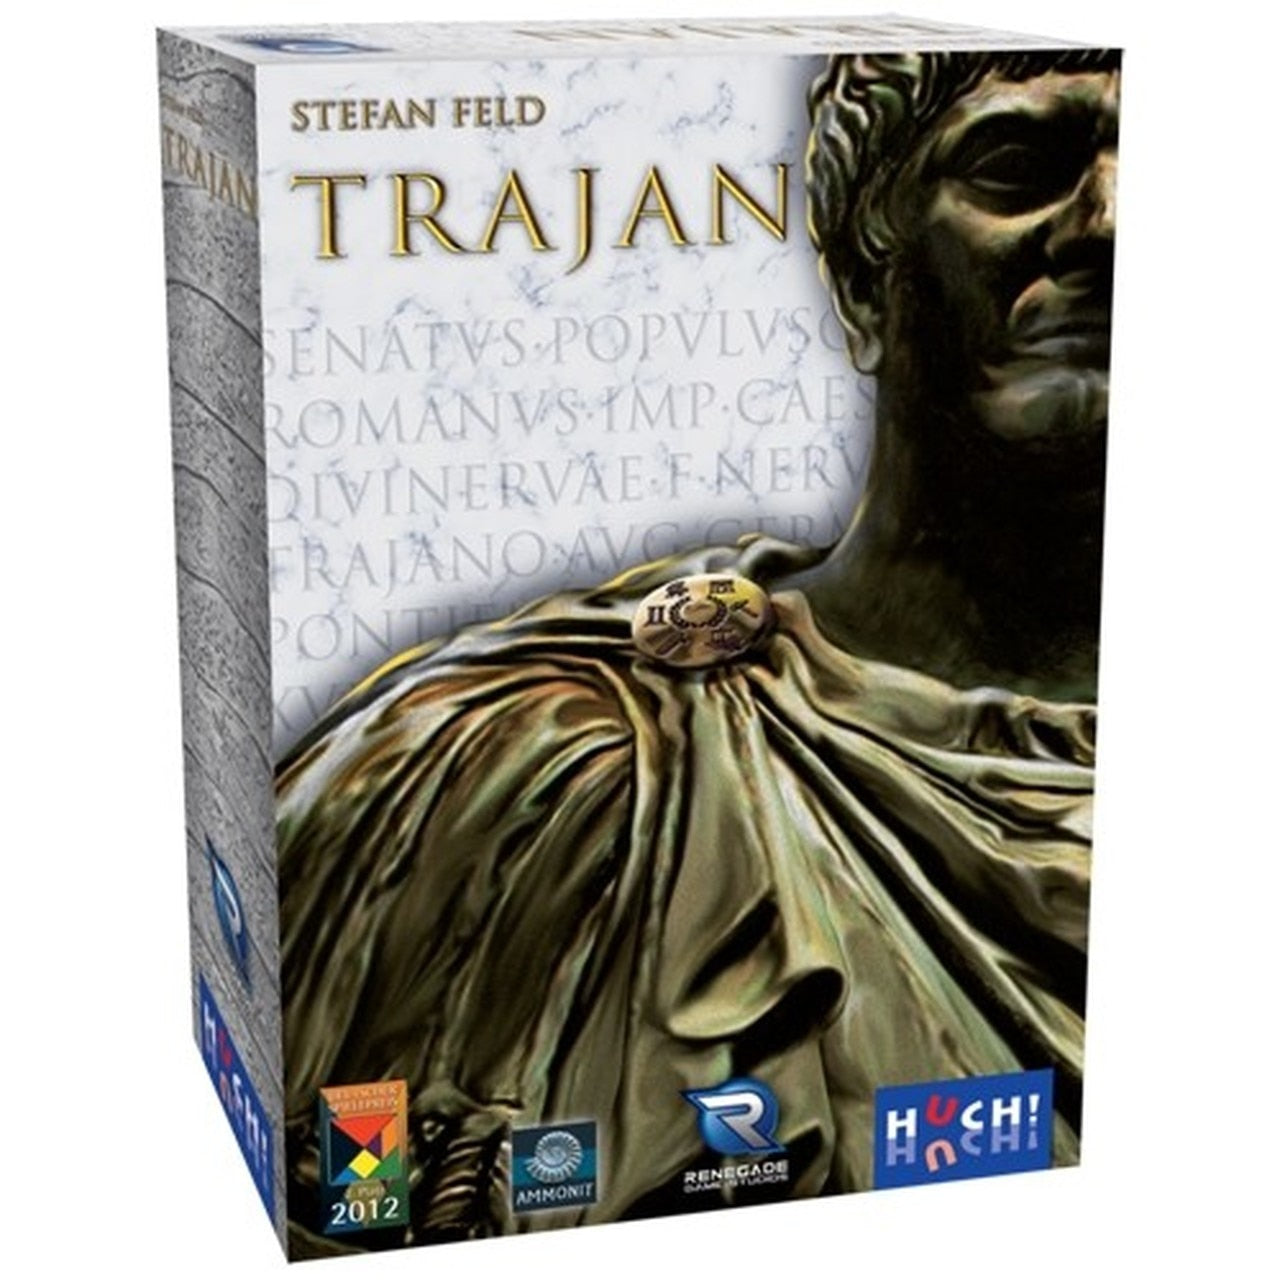 (BSG Certified USED) Trajan